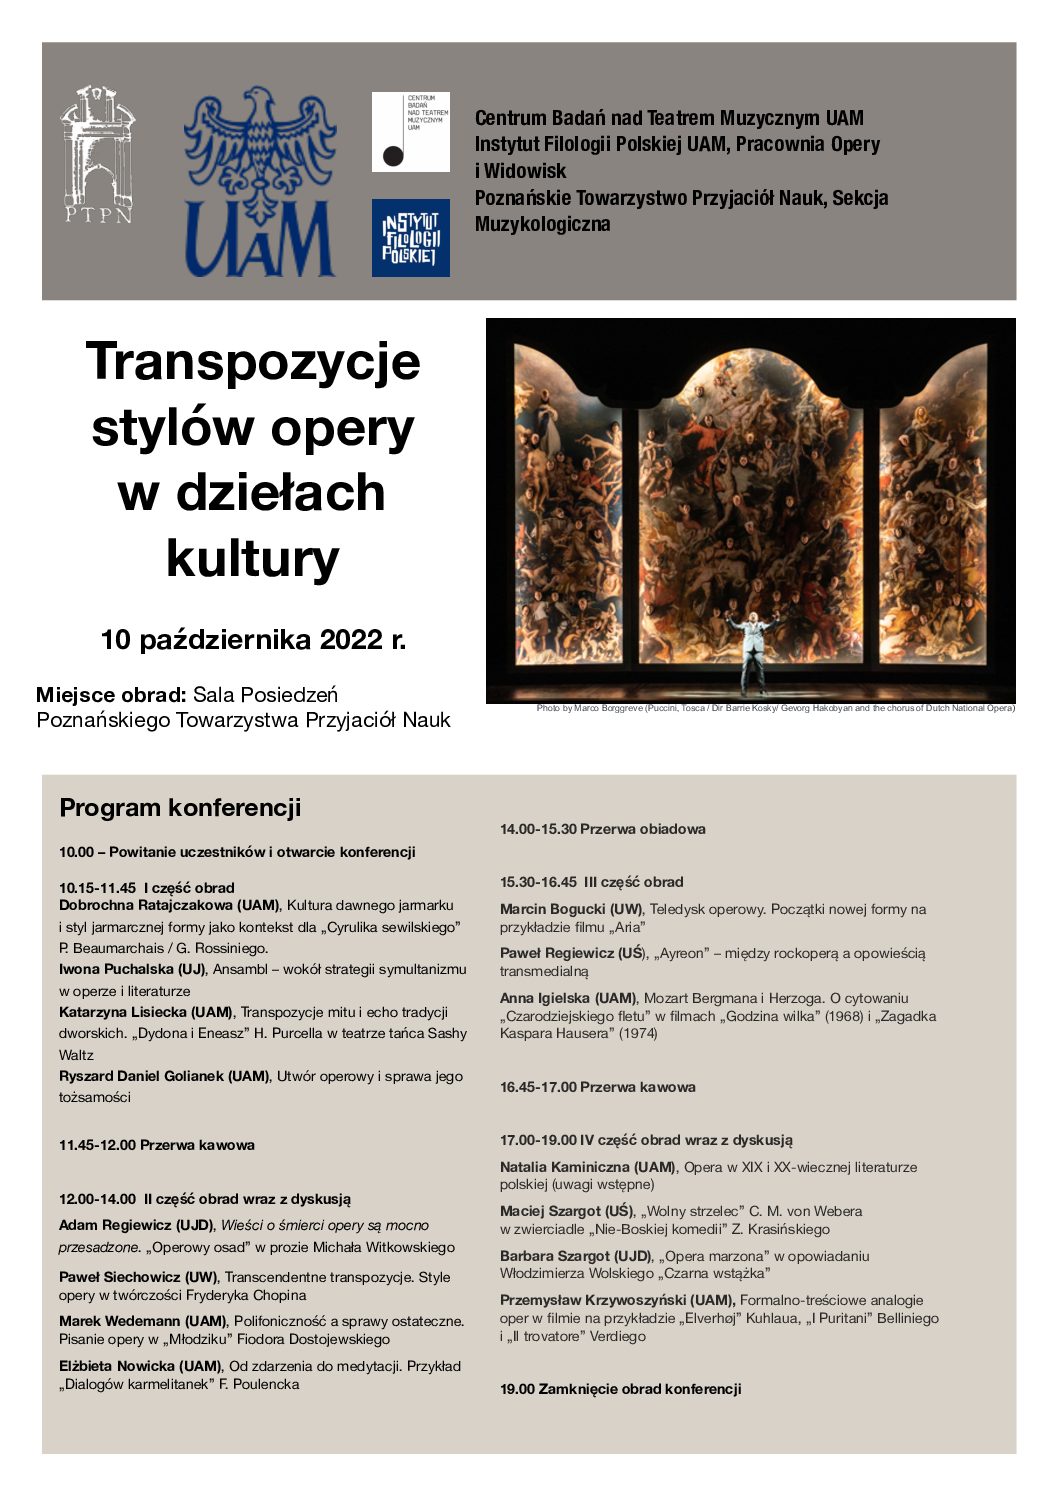 konferencja „Transpozycje stylów opery w dziełach kultury”